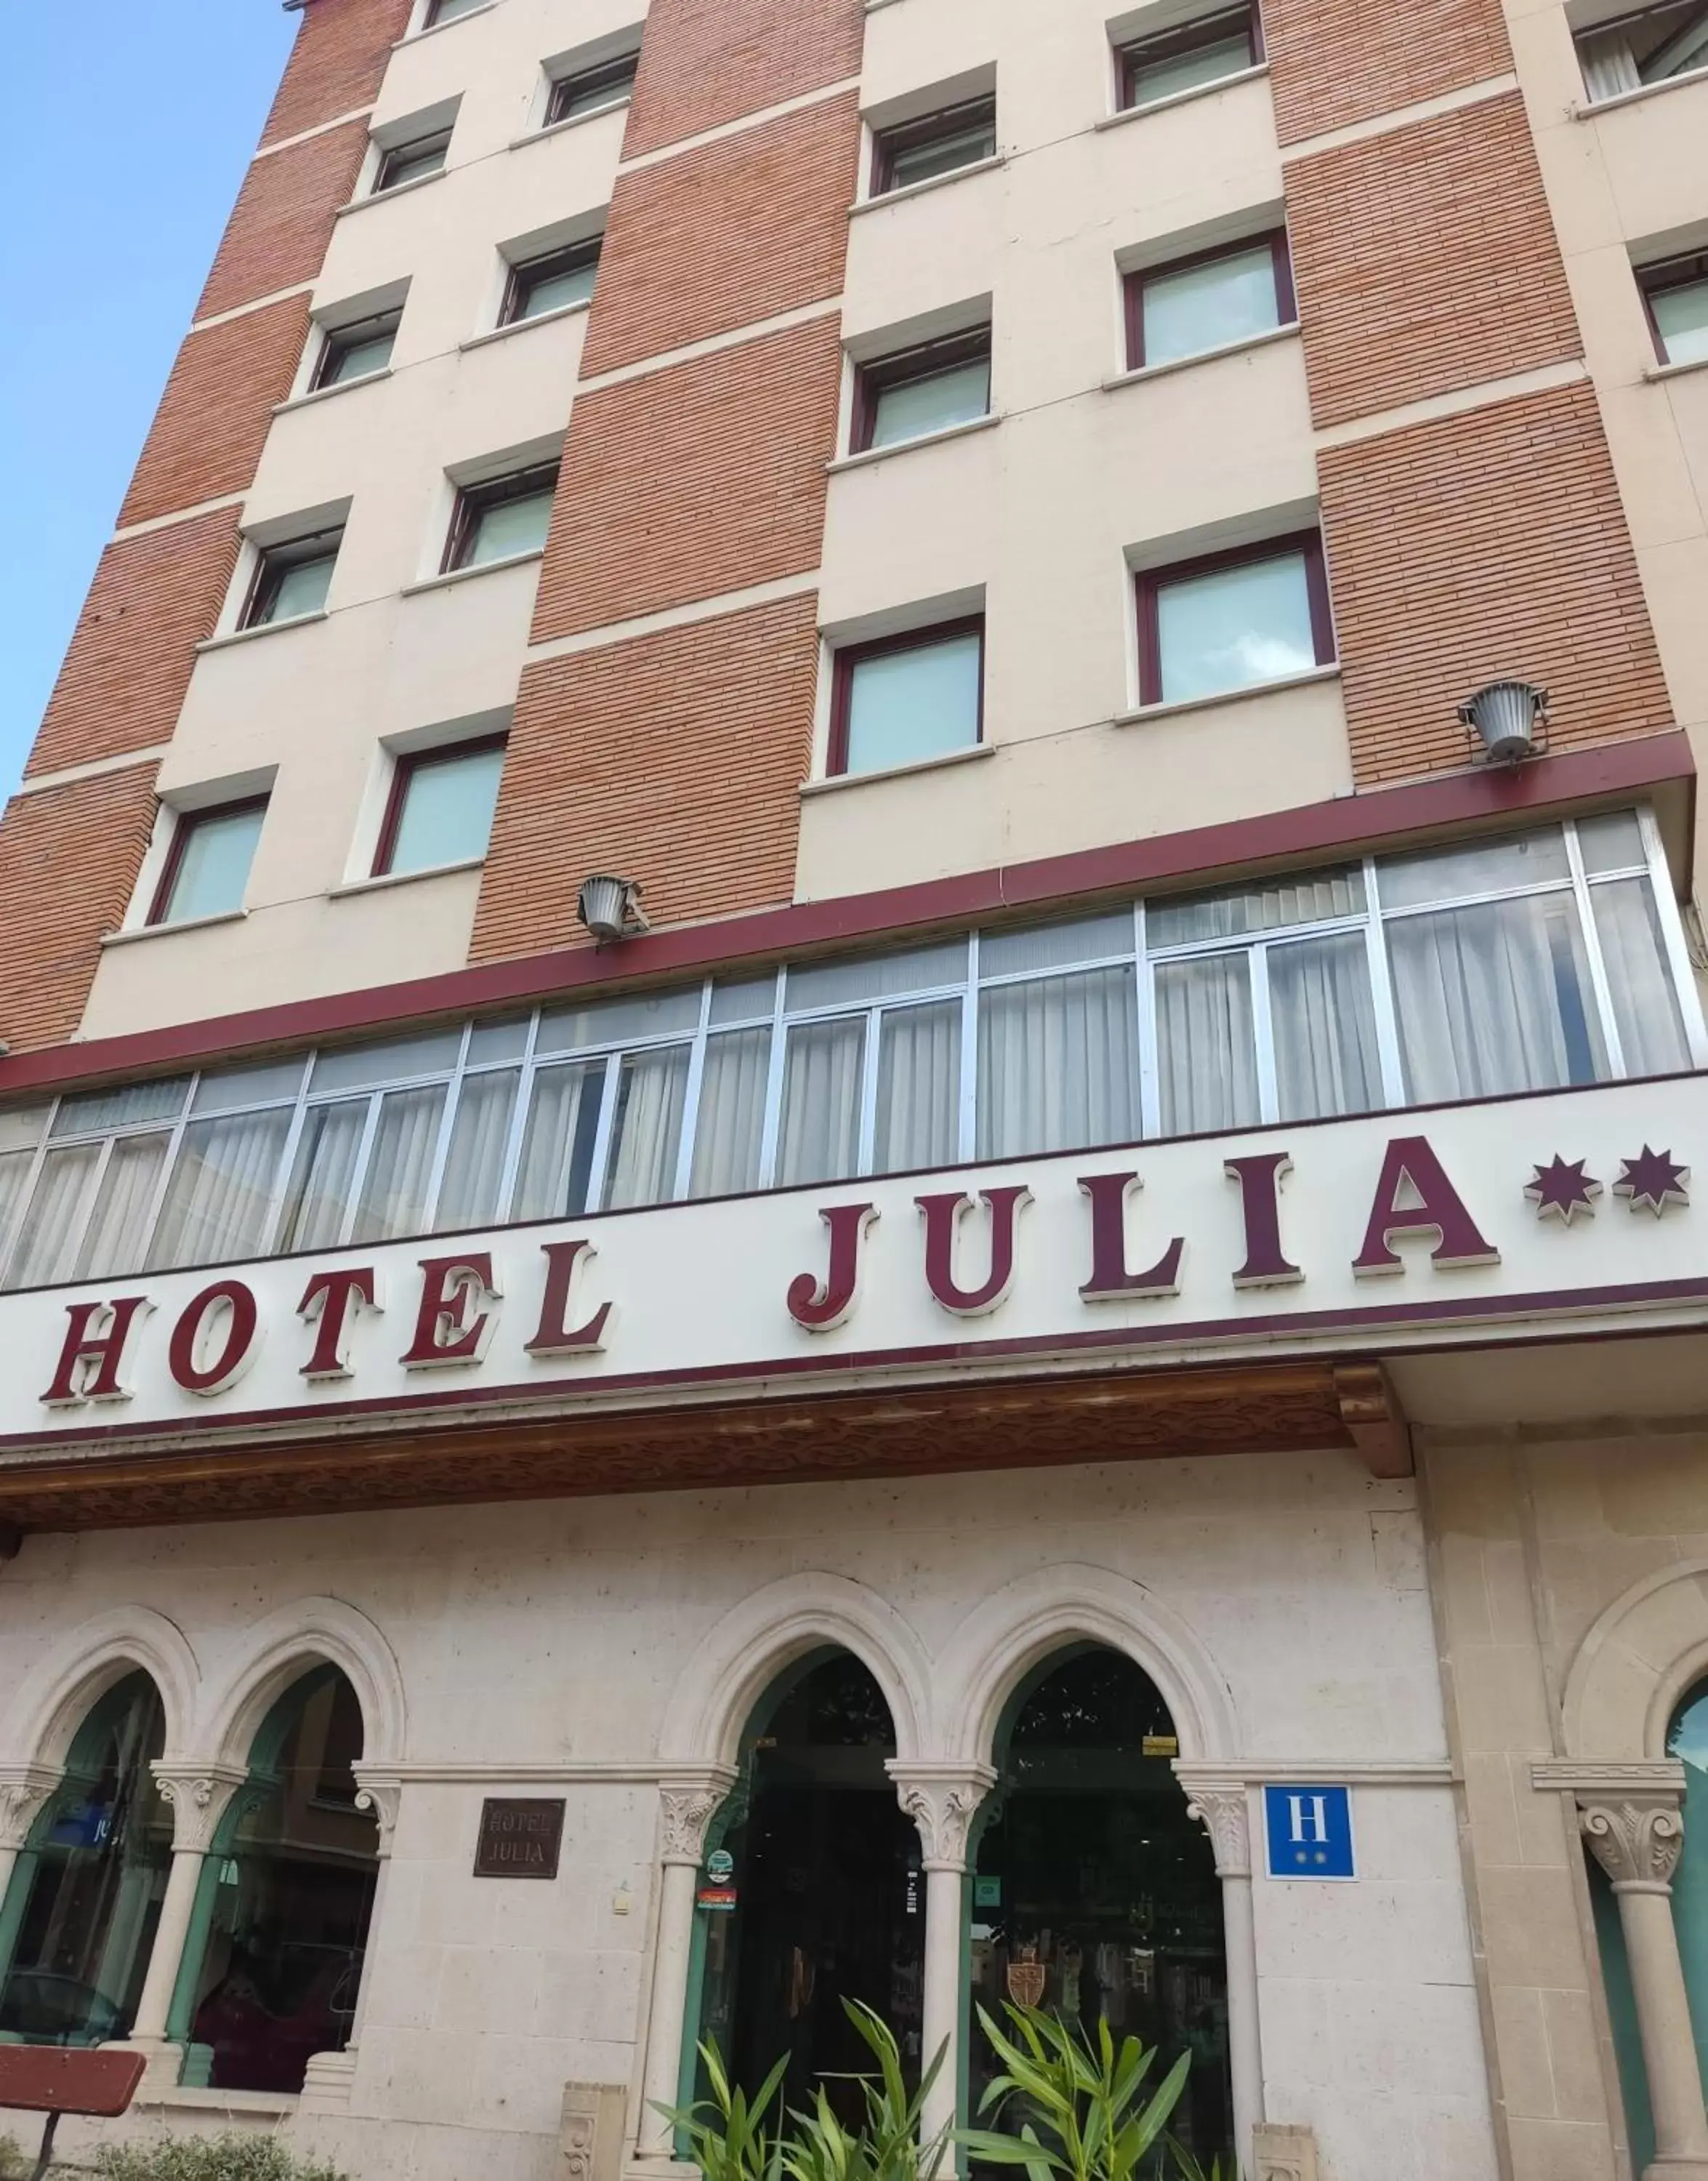 Facade/entrance, Property Building in Hotel Julia